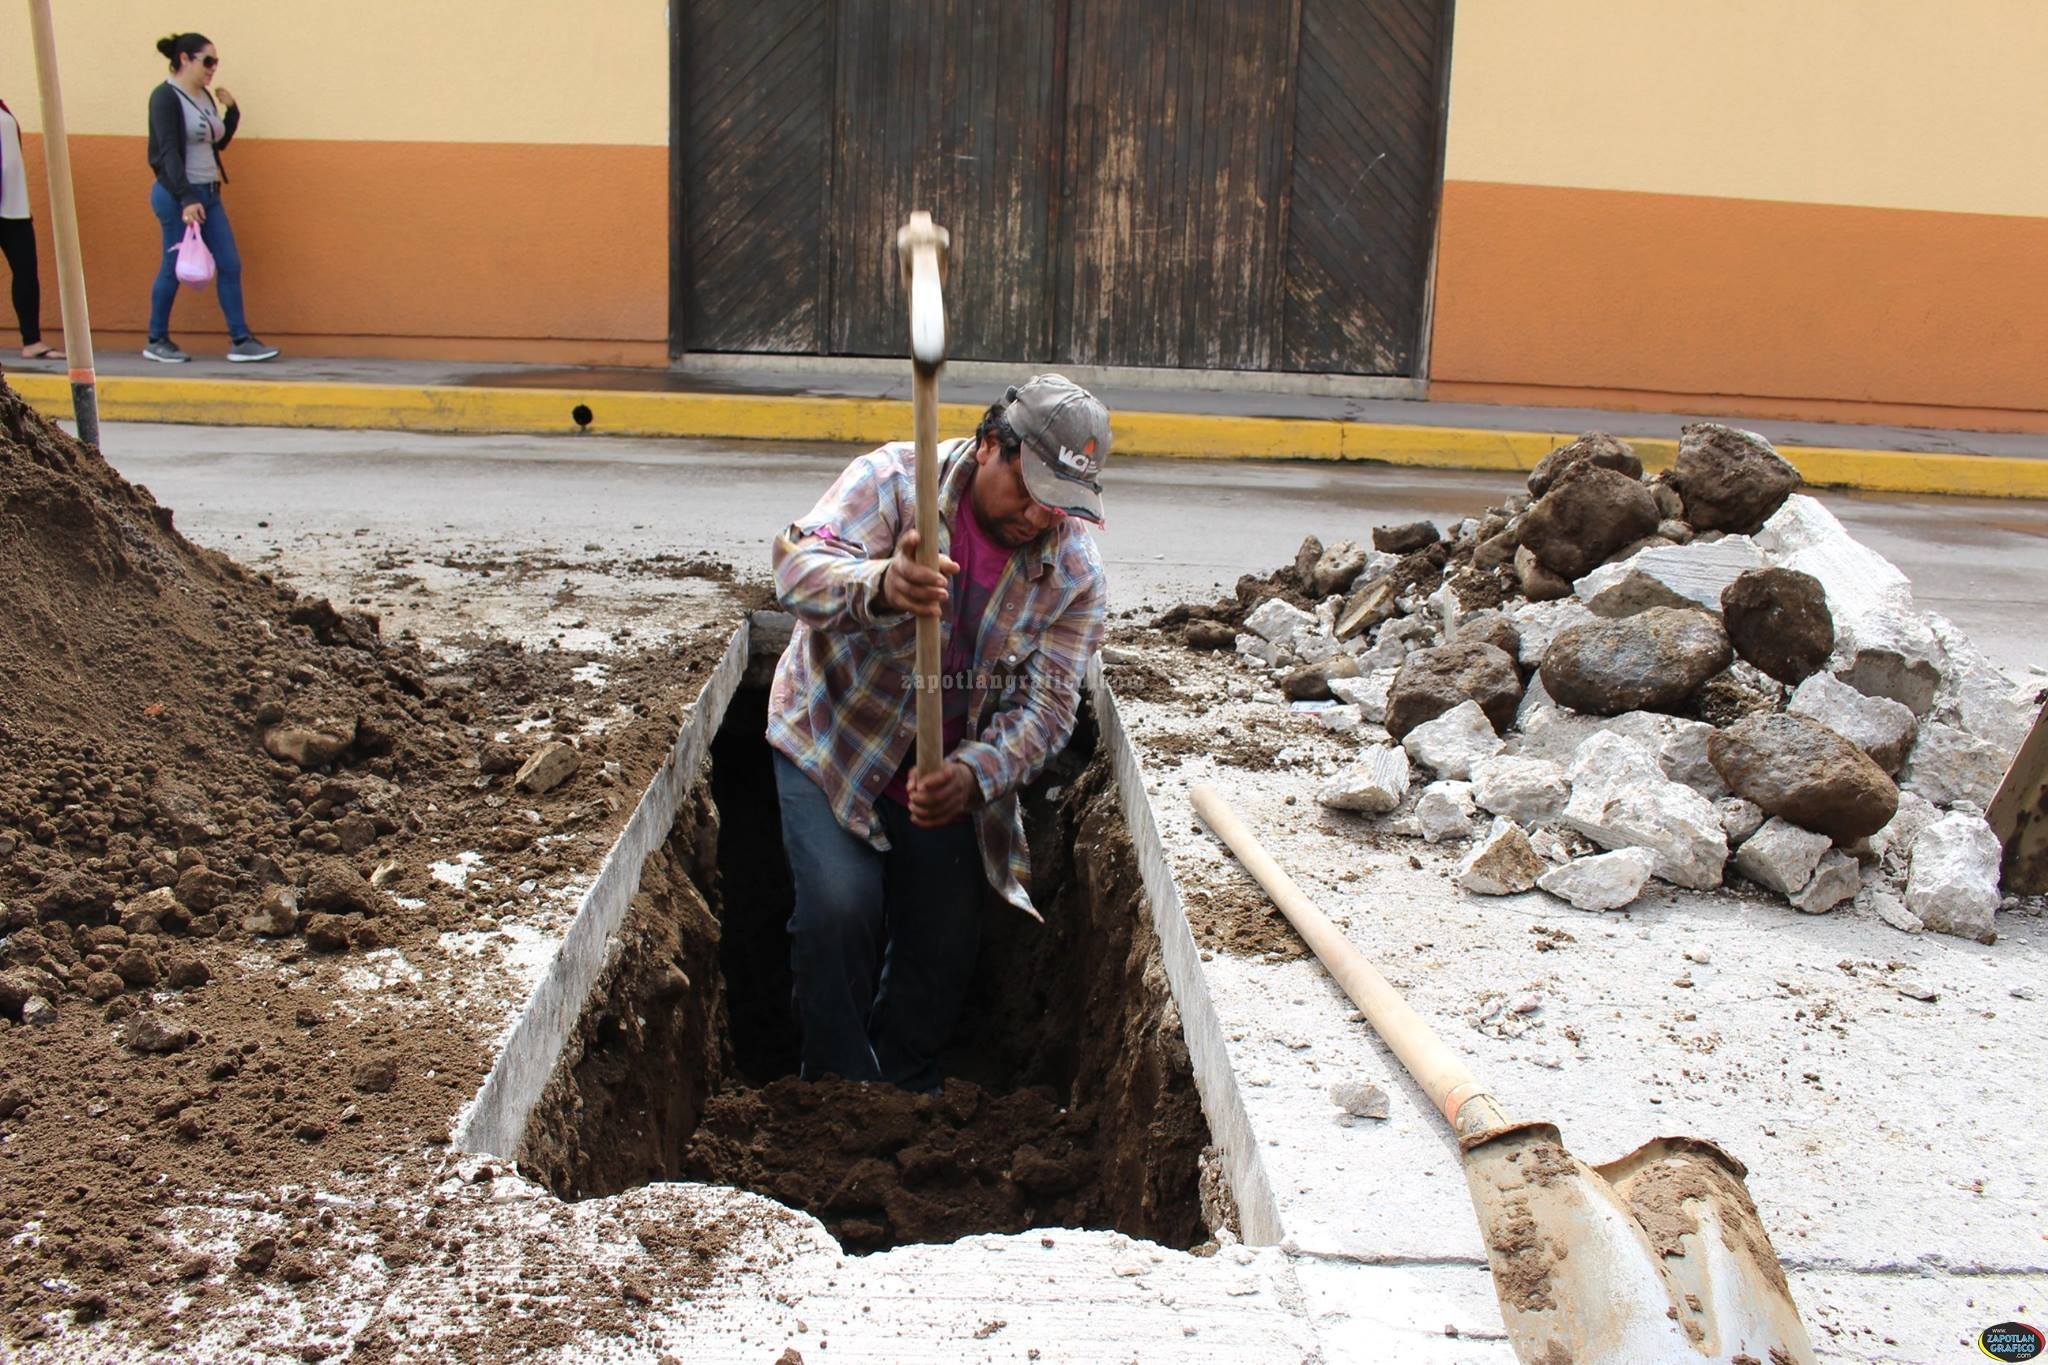 Rehabilitan líneas de drenaje en la calle Reforma de Zapotiltic, Jal.